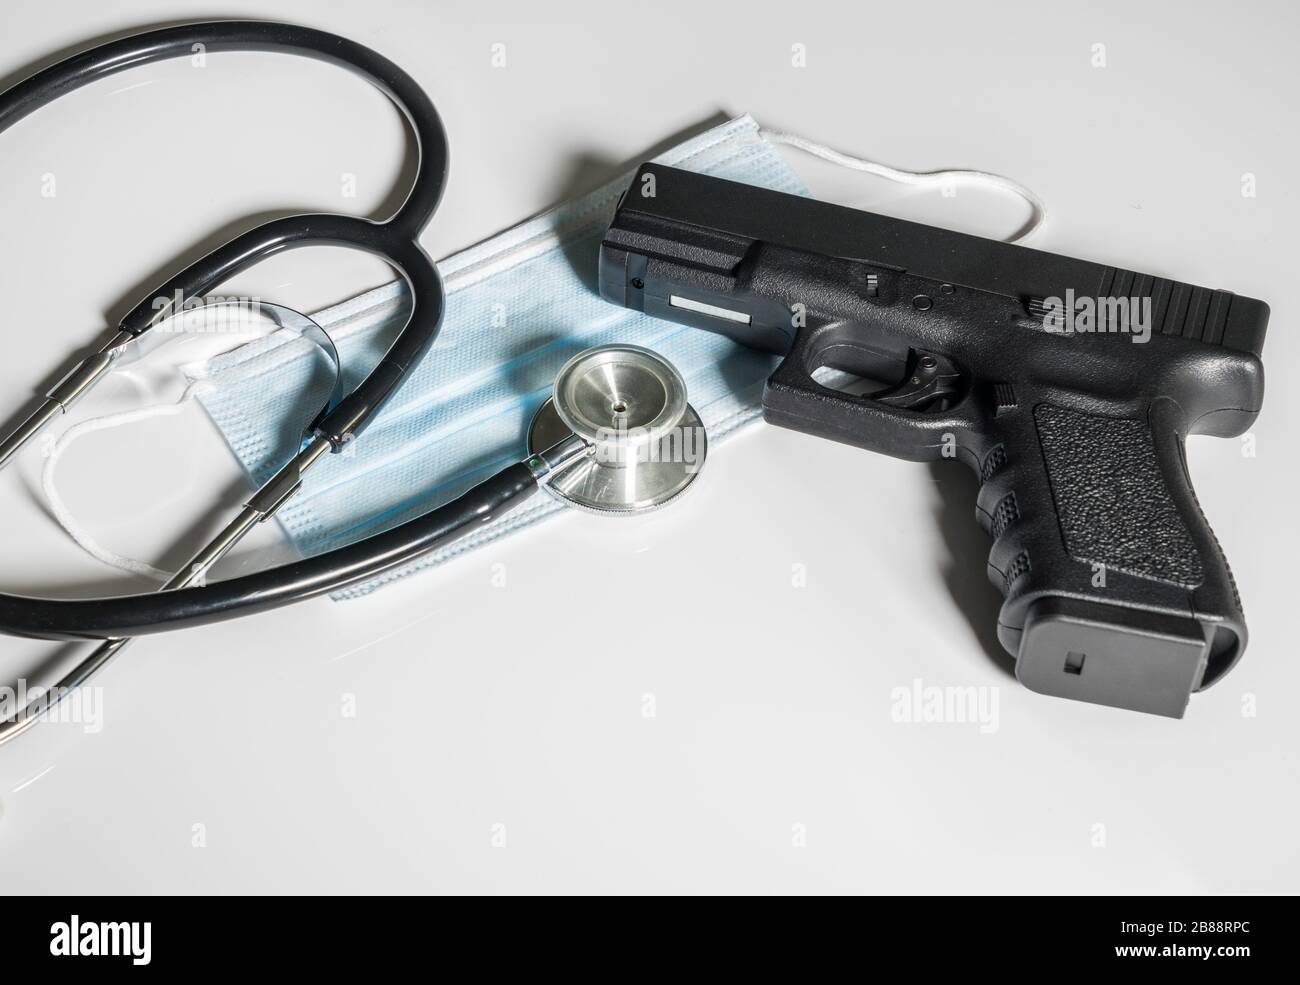 Pistolet pistolet posé sur le masque médical en concept pour les dangers auxquels fait face le personnel médical de première ligne Banque D'Images